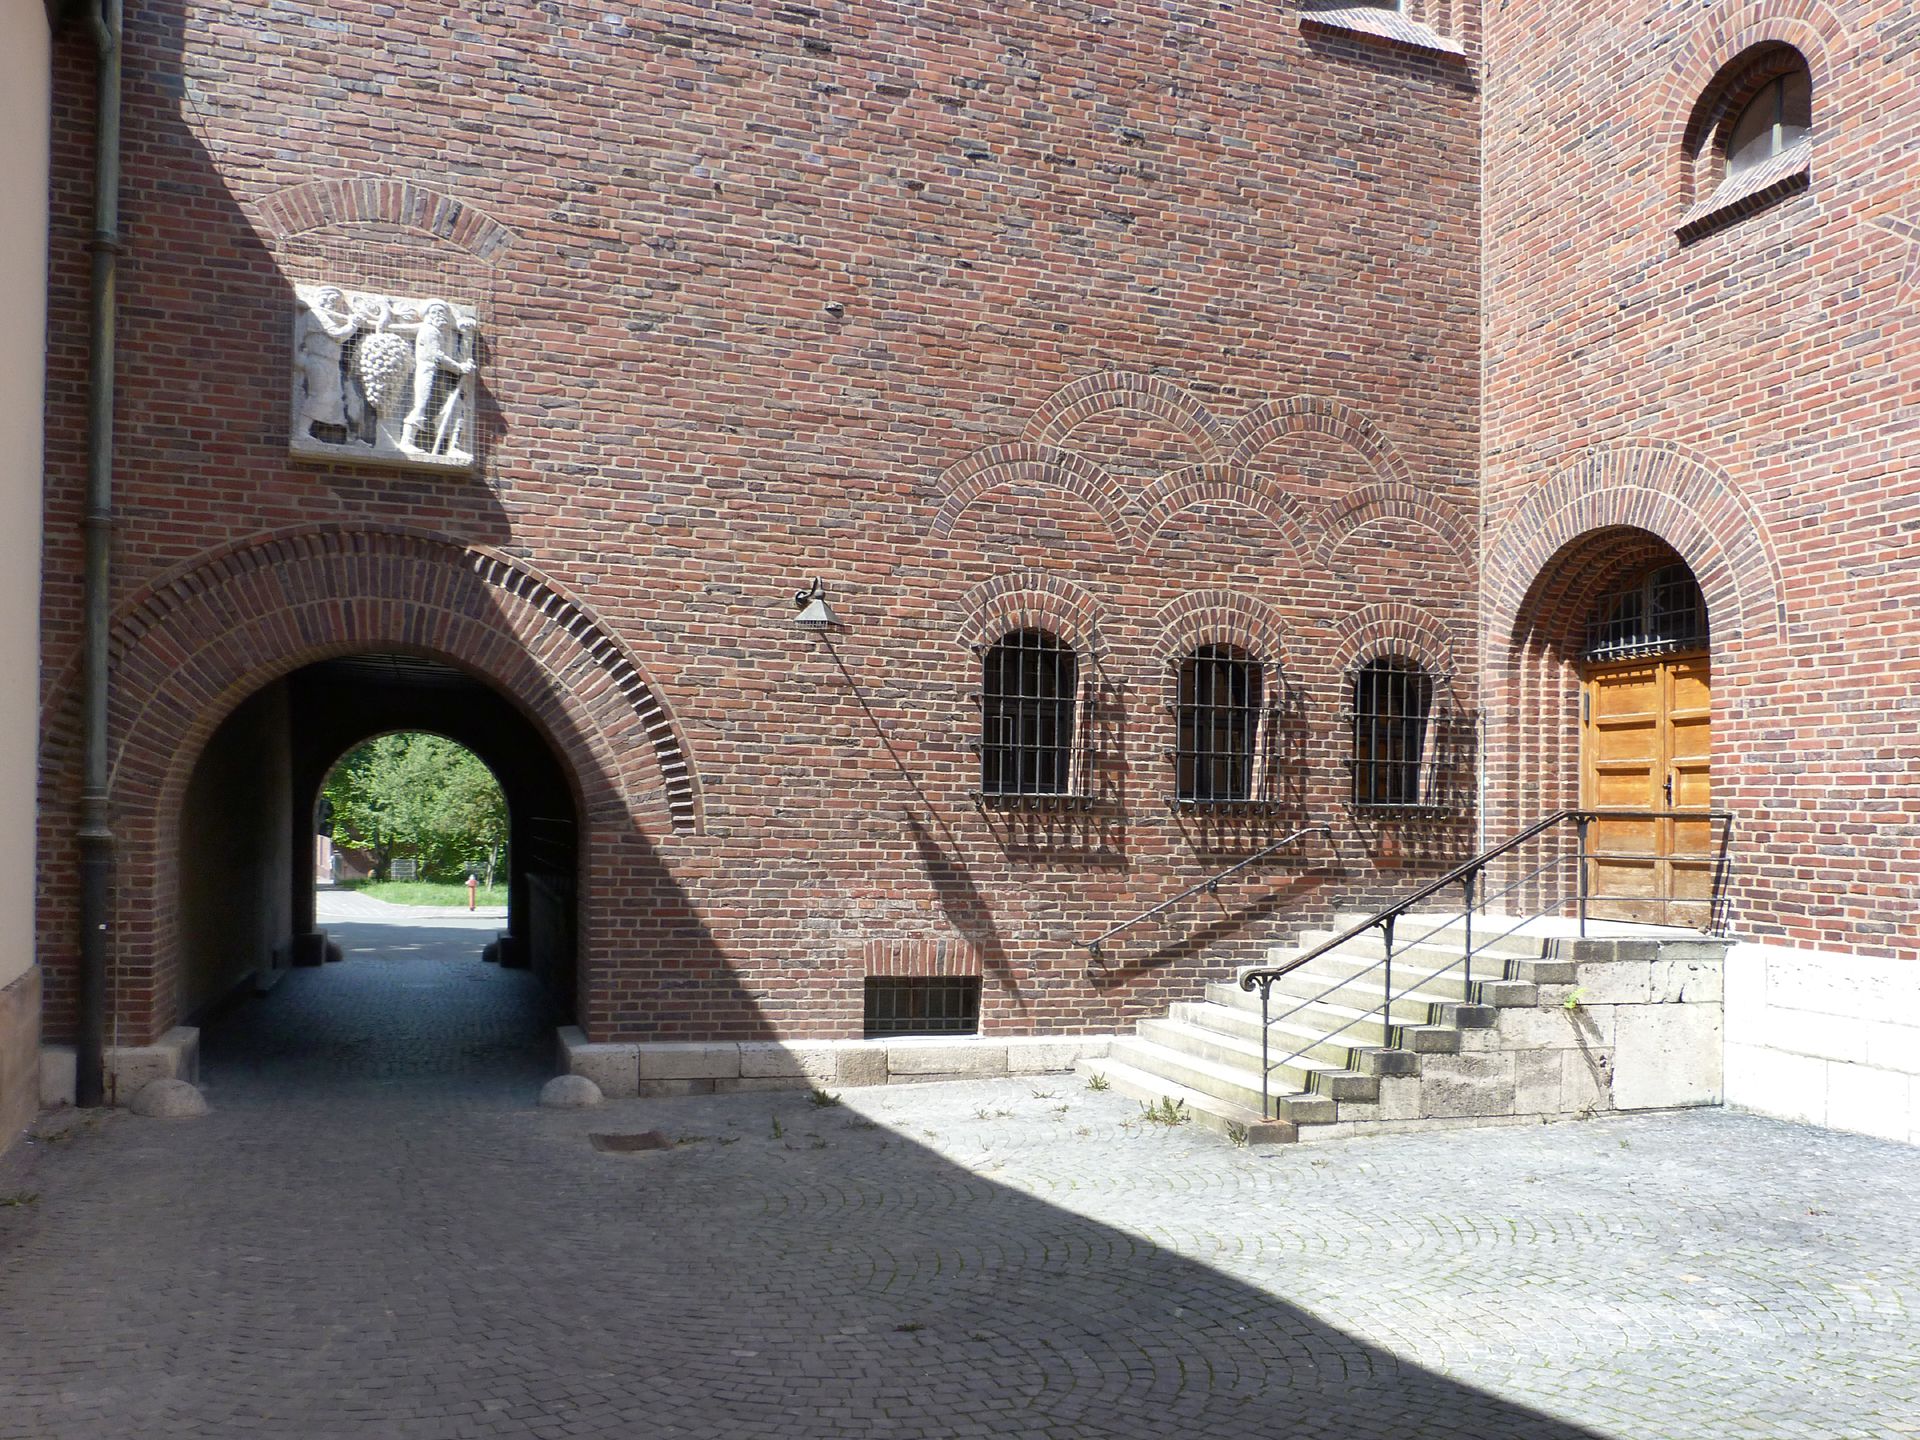 Gustav-Adolf-Gedächtniskirche Durchfahrt mit Innenhof (s.a. Philipp Kittler: "Die Kundschafter")